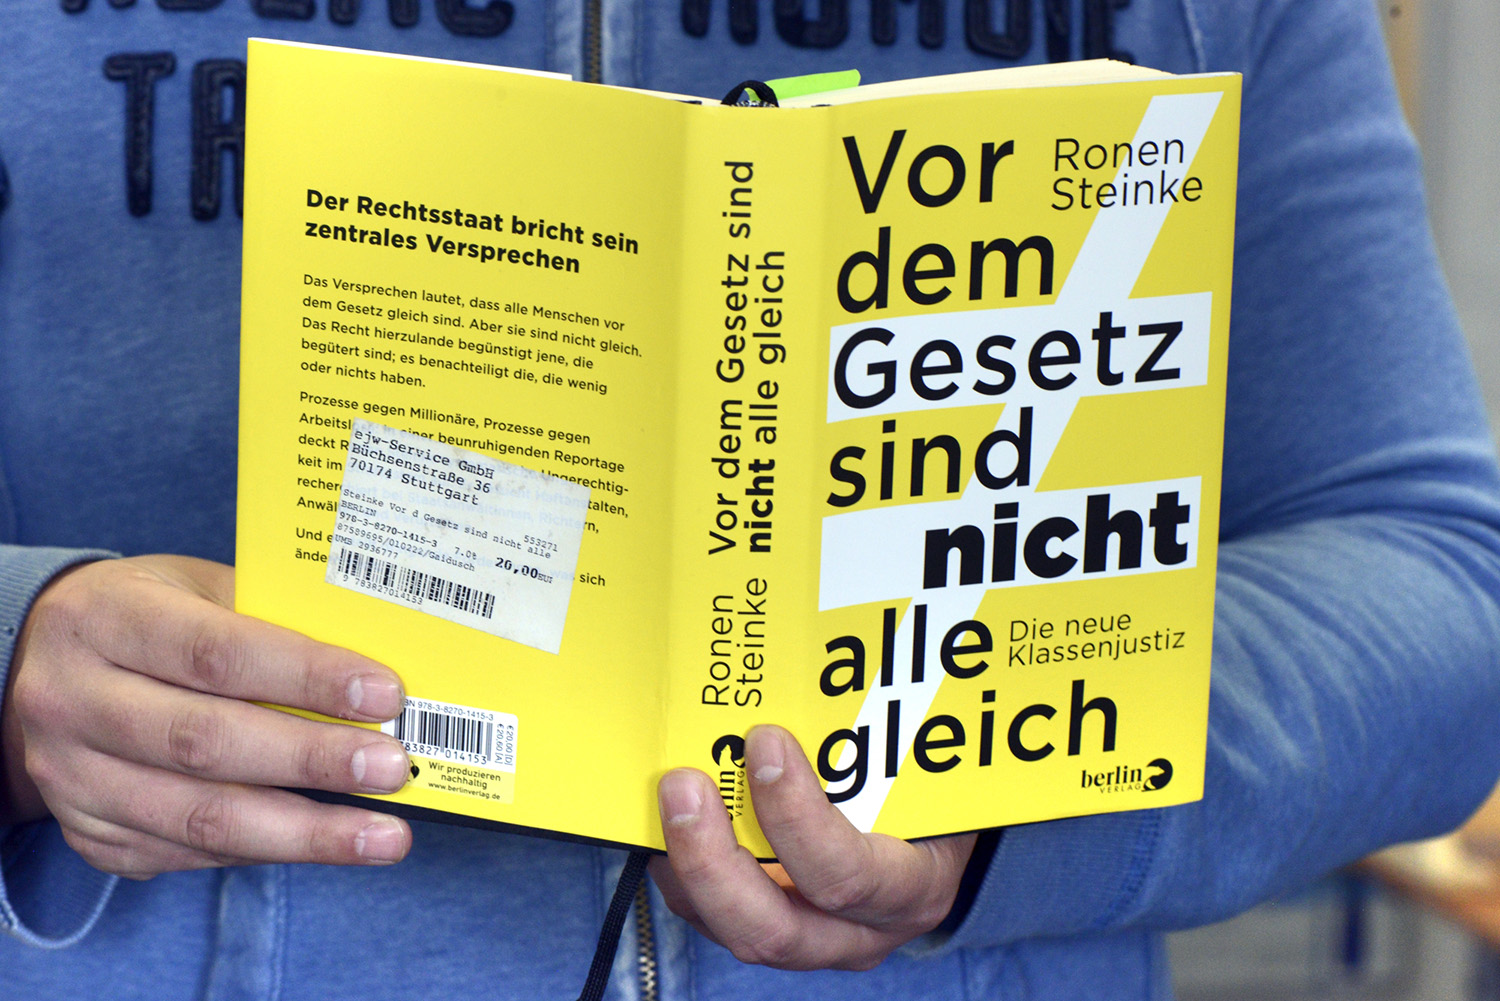 Auf dem Foto zu sehen: Buchcover "Die Demokratie braucht uns!" von Claudine Nierth